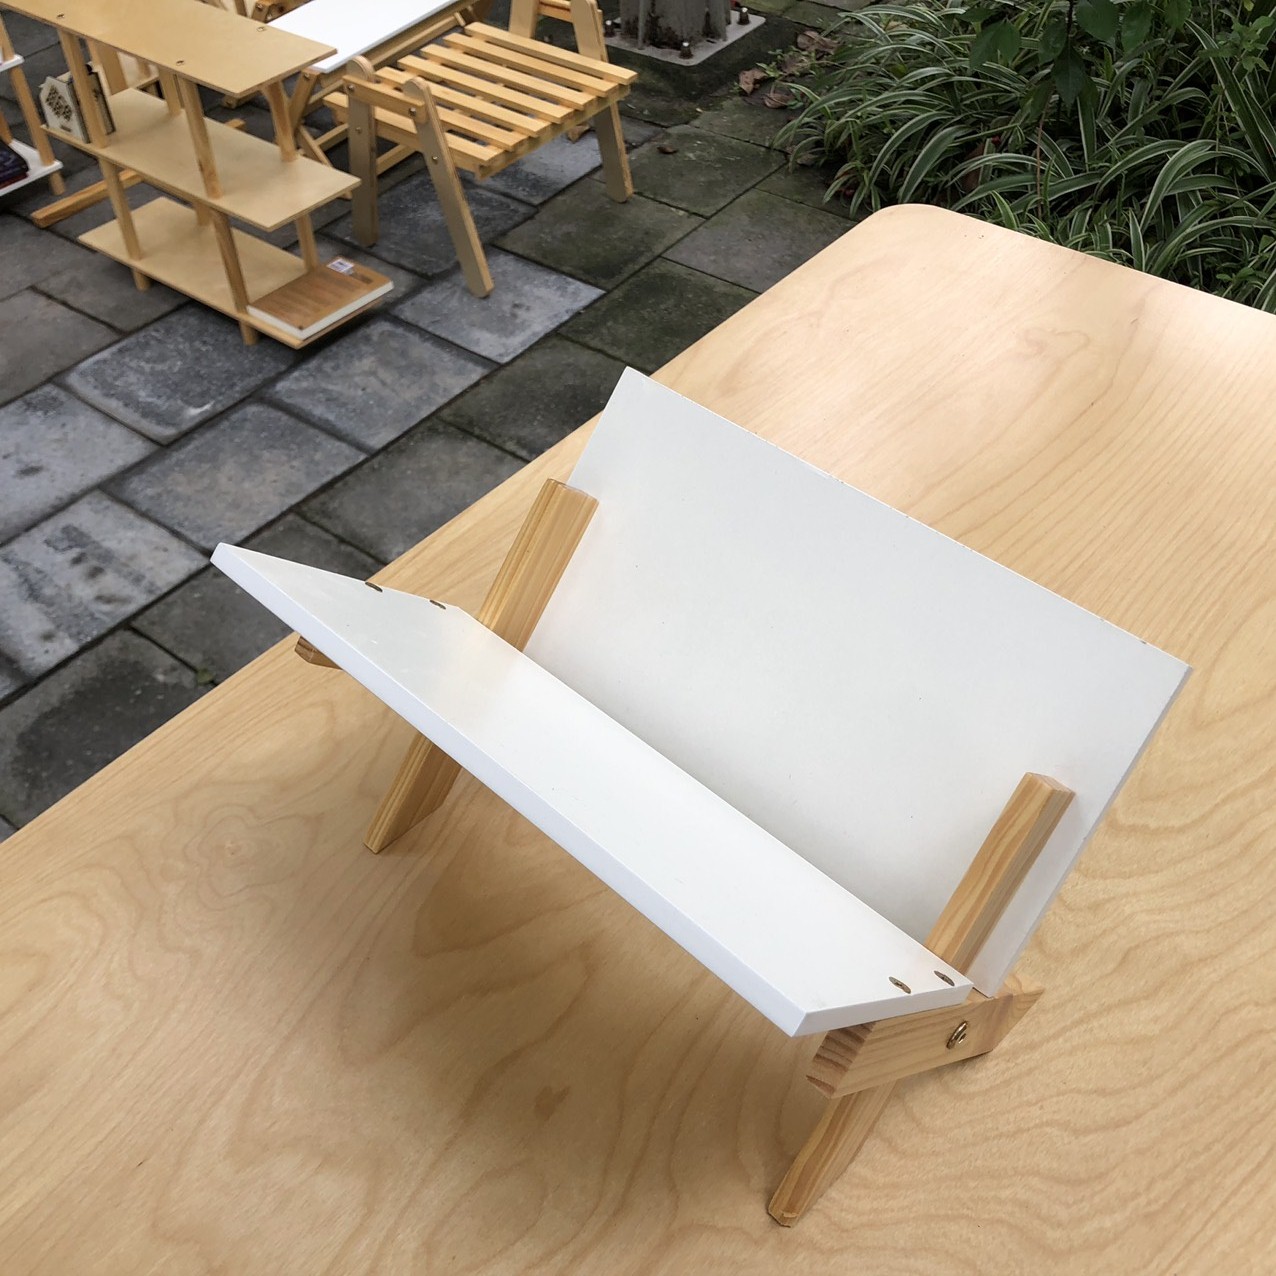 Kệ Giá sách gỗ tự nhiên để bàn loại chân chéo,thiết kế tháo lắp thông minh của KNF Furniture